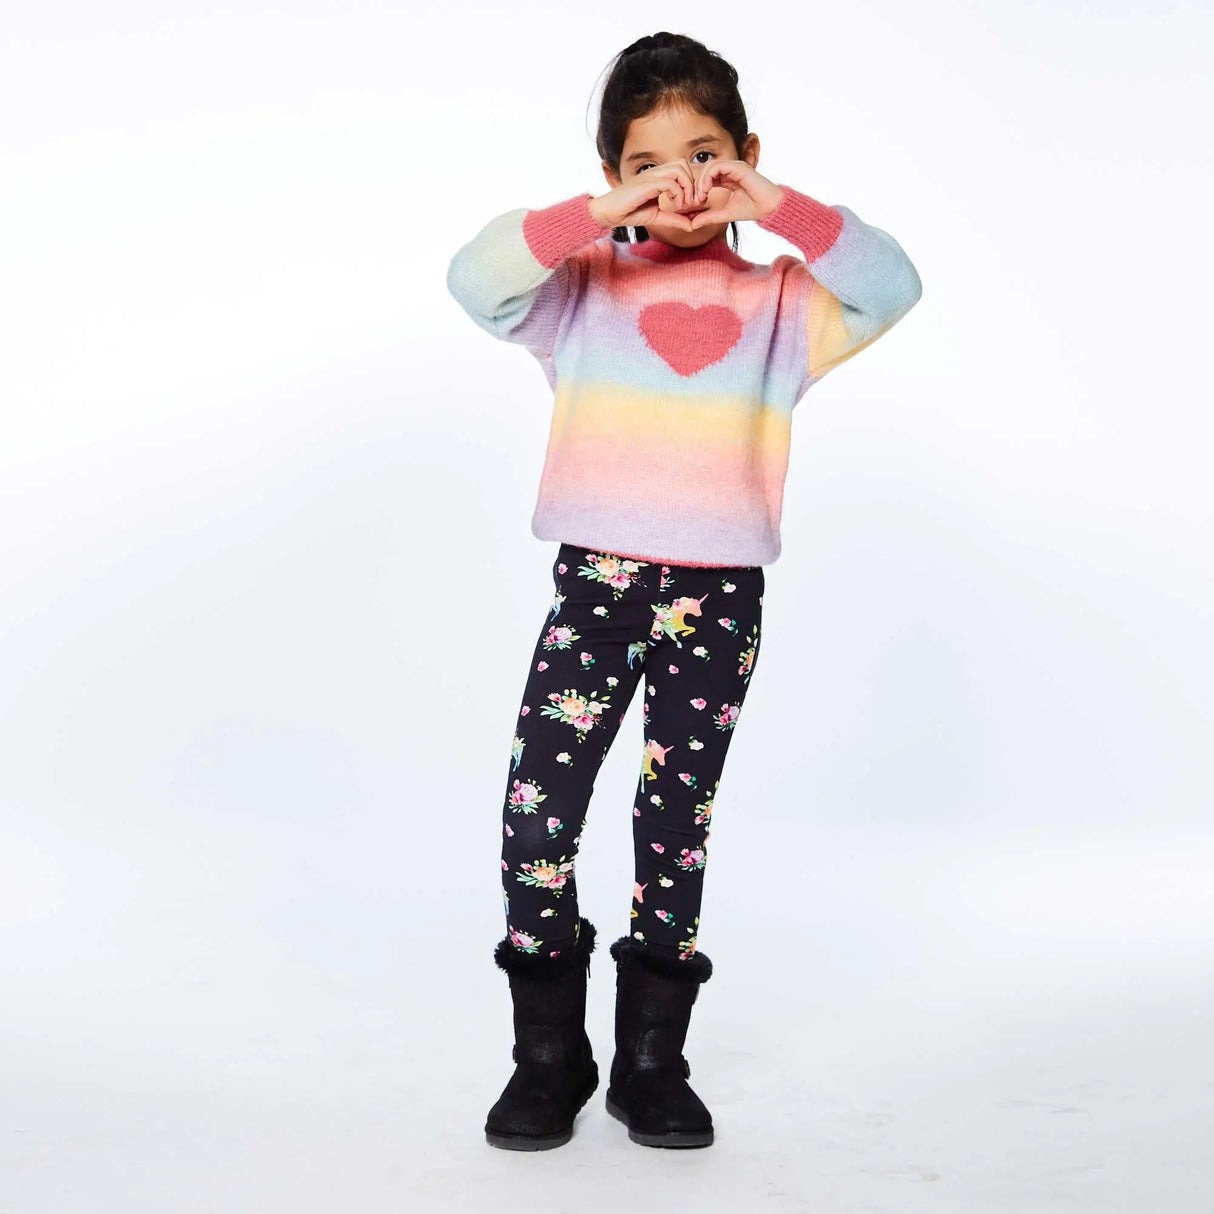 Jacquard Knit Sweater With Heart | DEUX PAR DEUX - DEUX PAR DEUX